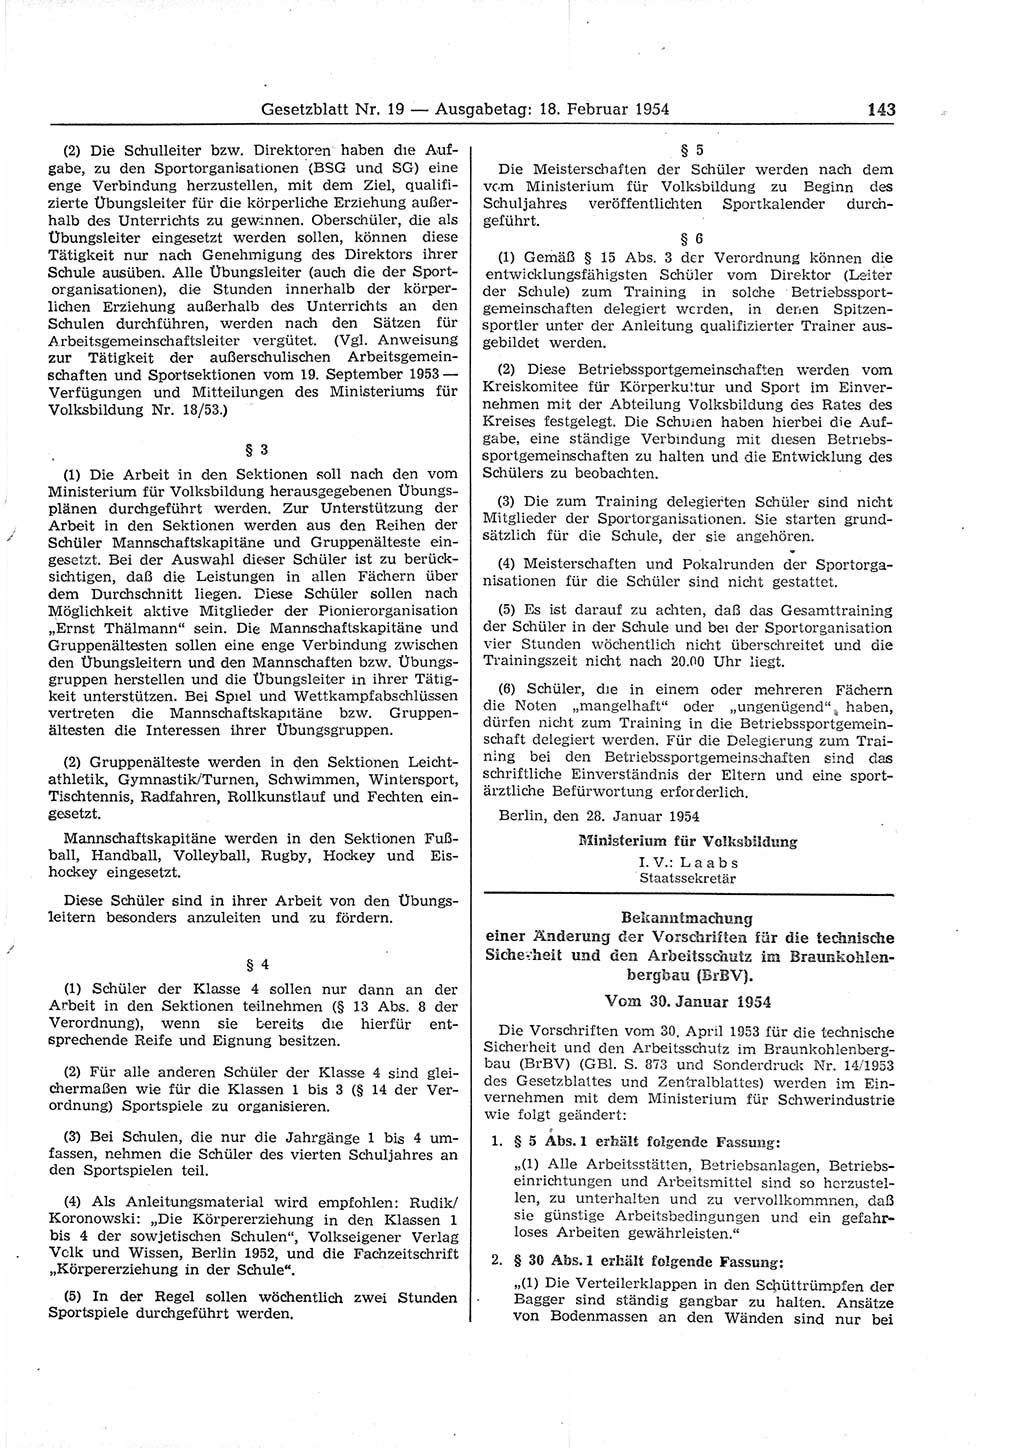 Gesetzblatt (GBl.) der Deutschen Demokratischen Republik (DDR) 1954, Seite 143 (GBl. DDR 1954, S. 143)